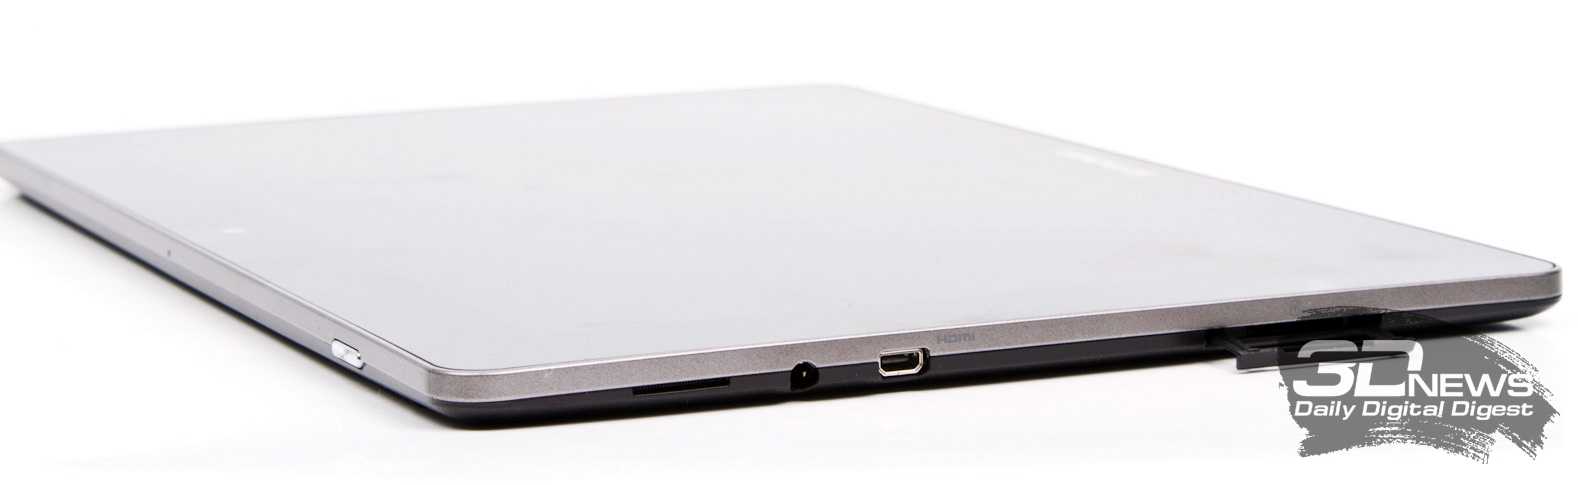 Планшет lenovo ideatab k3011 64 гб wifi серый — купить, цена и характеристики, отзывы